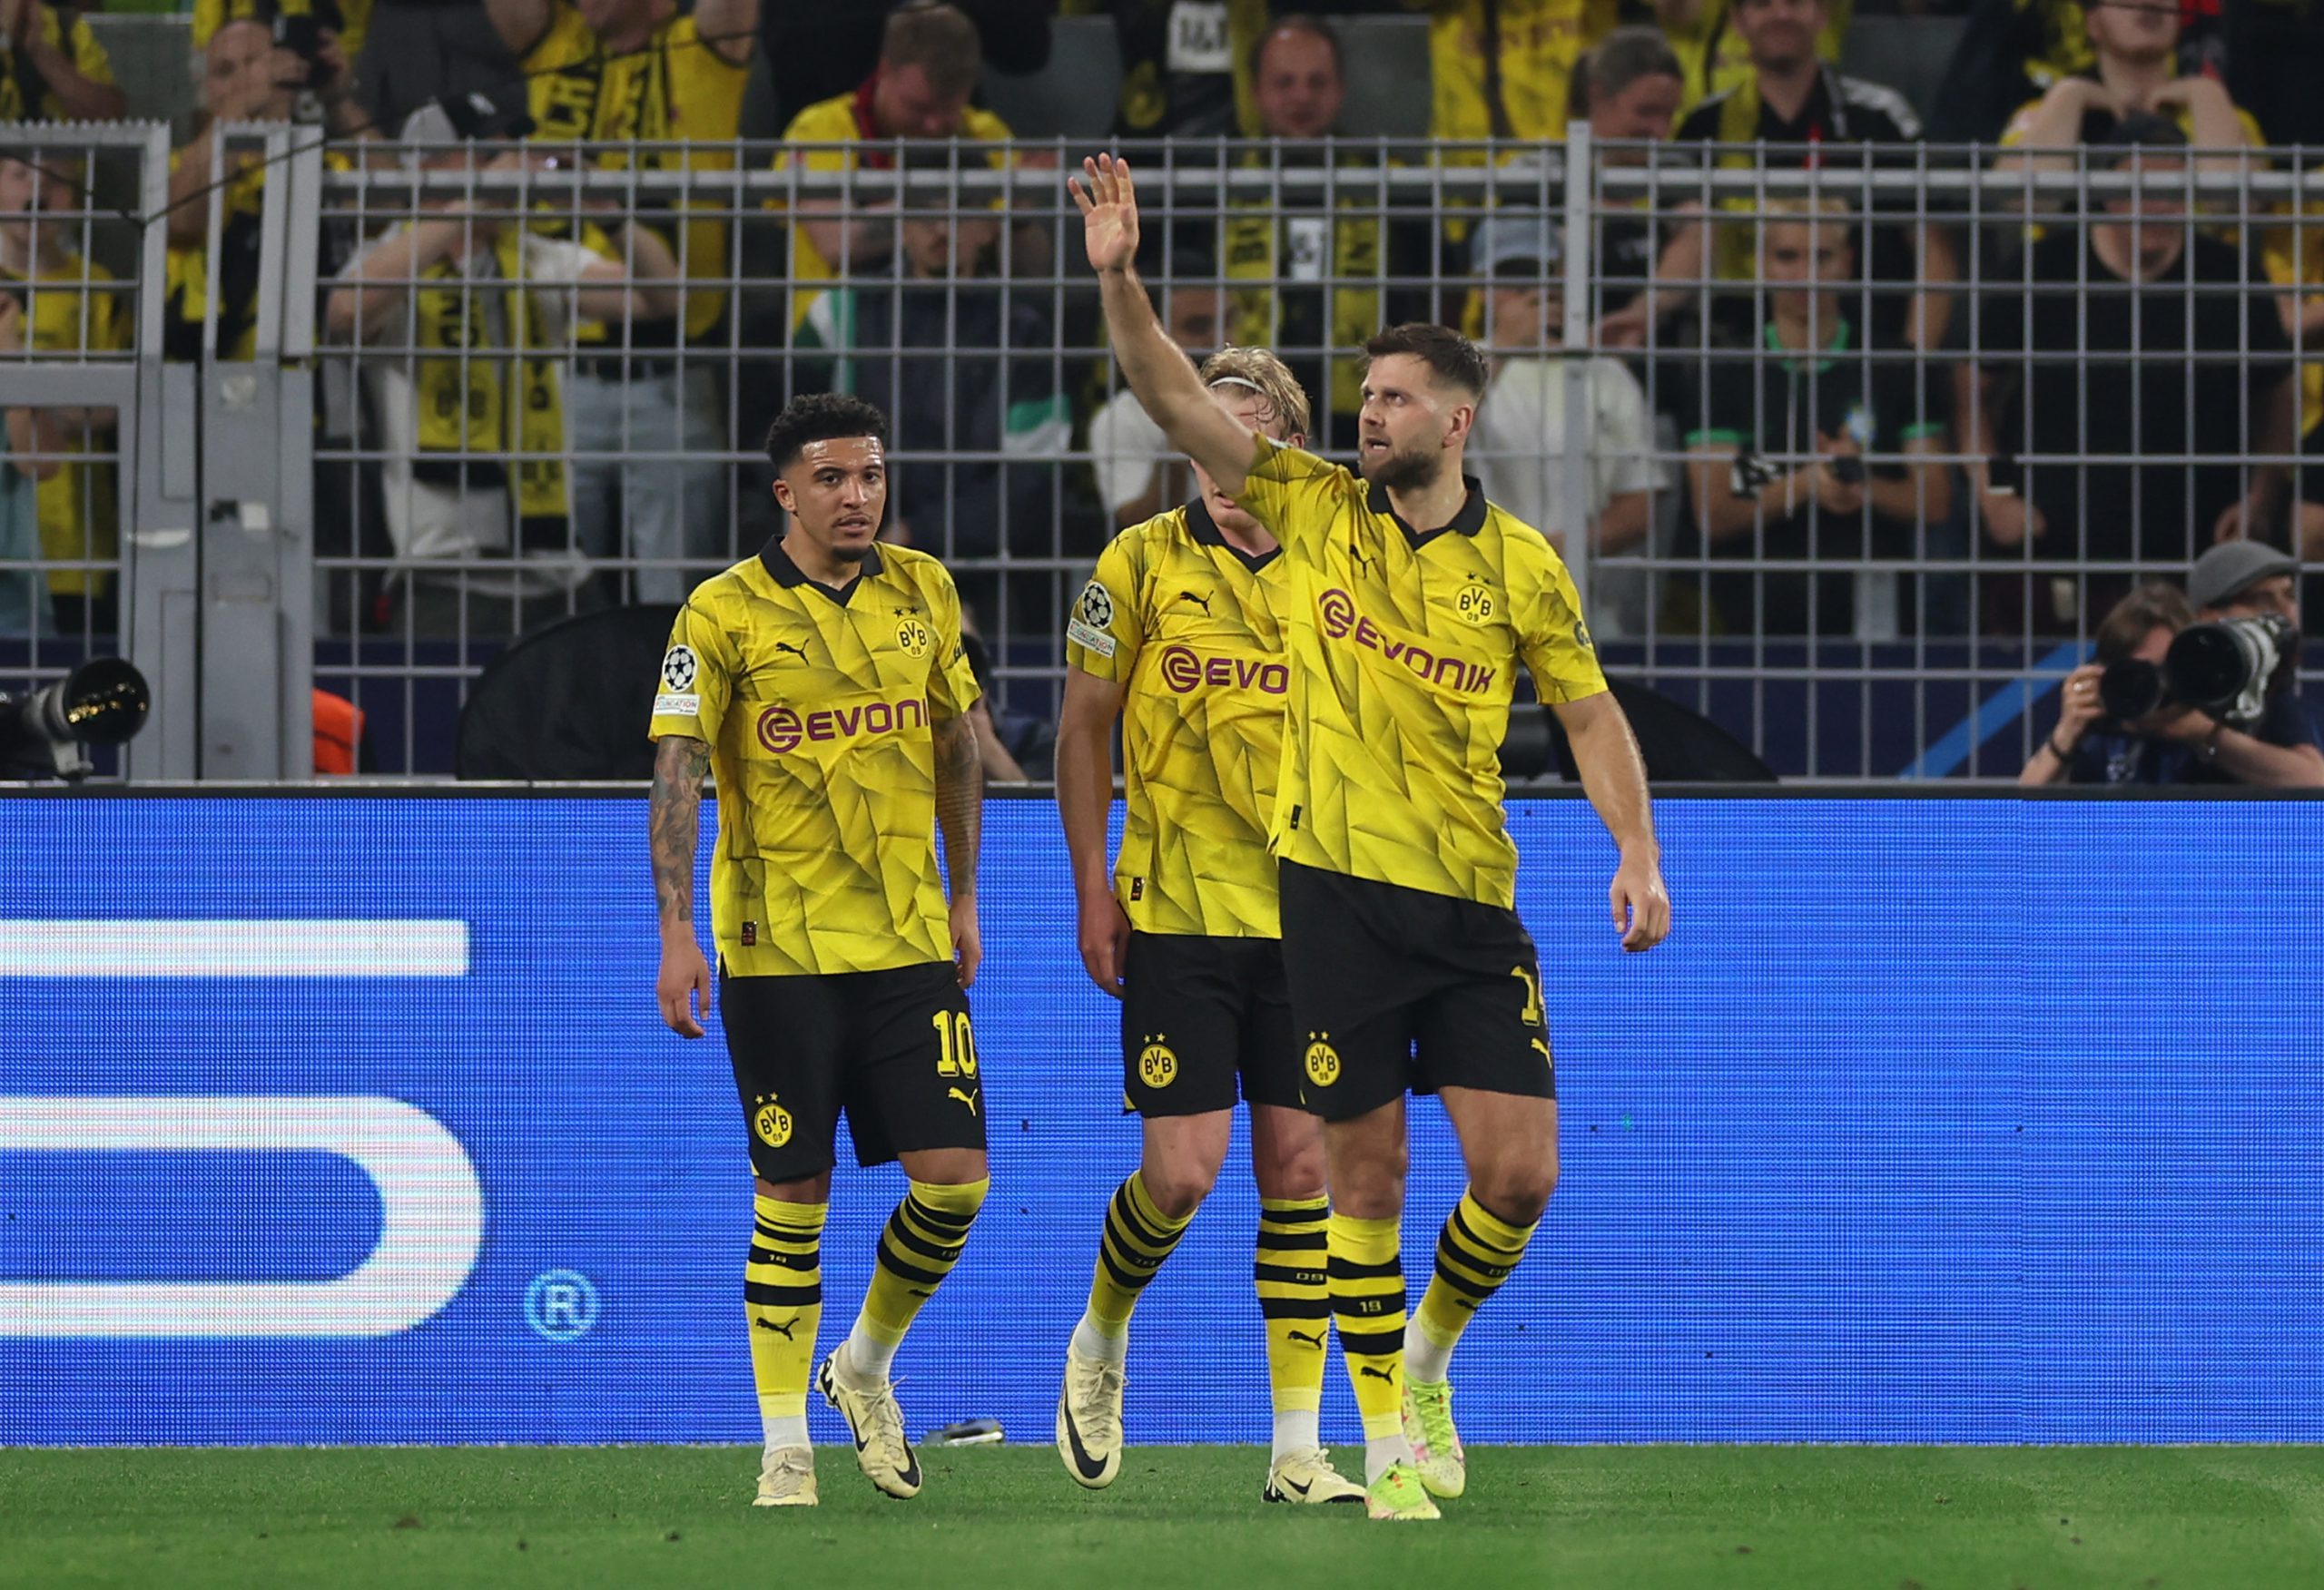 Il Borussia Dortmund vince col PSG! Skriniar trattato da ultimissimo